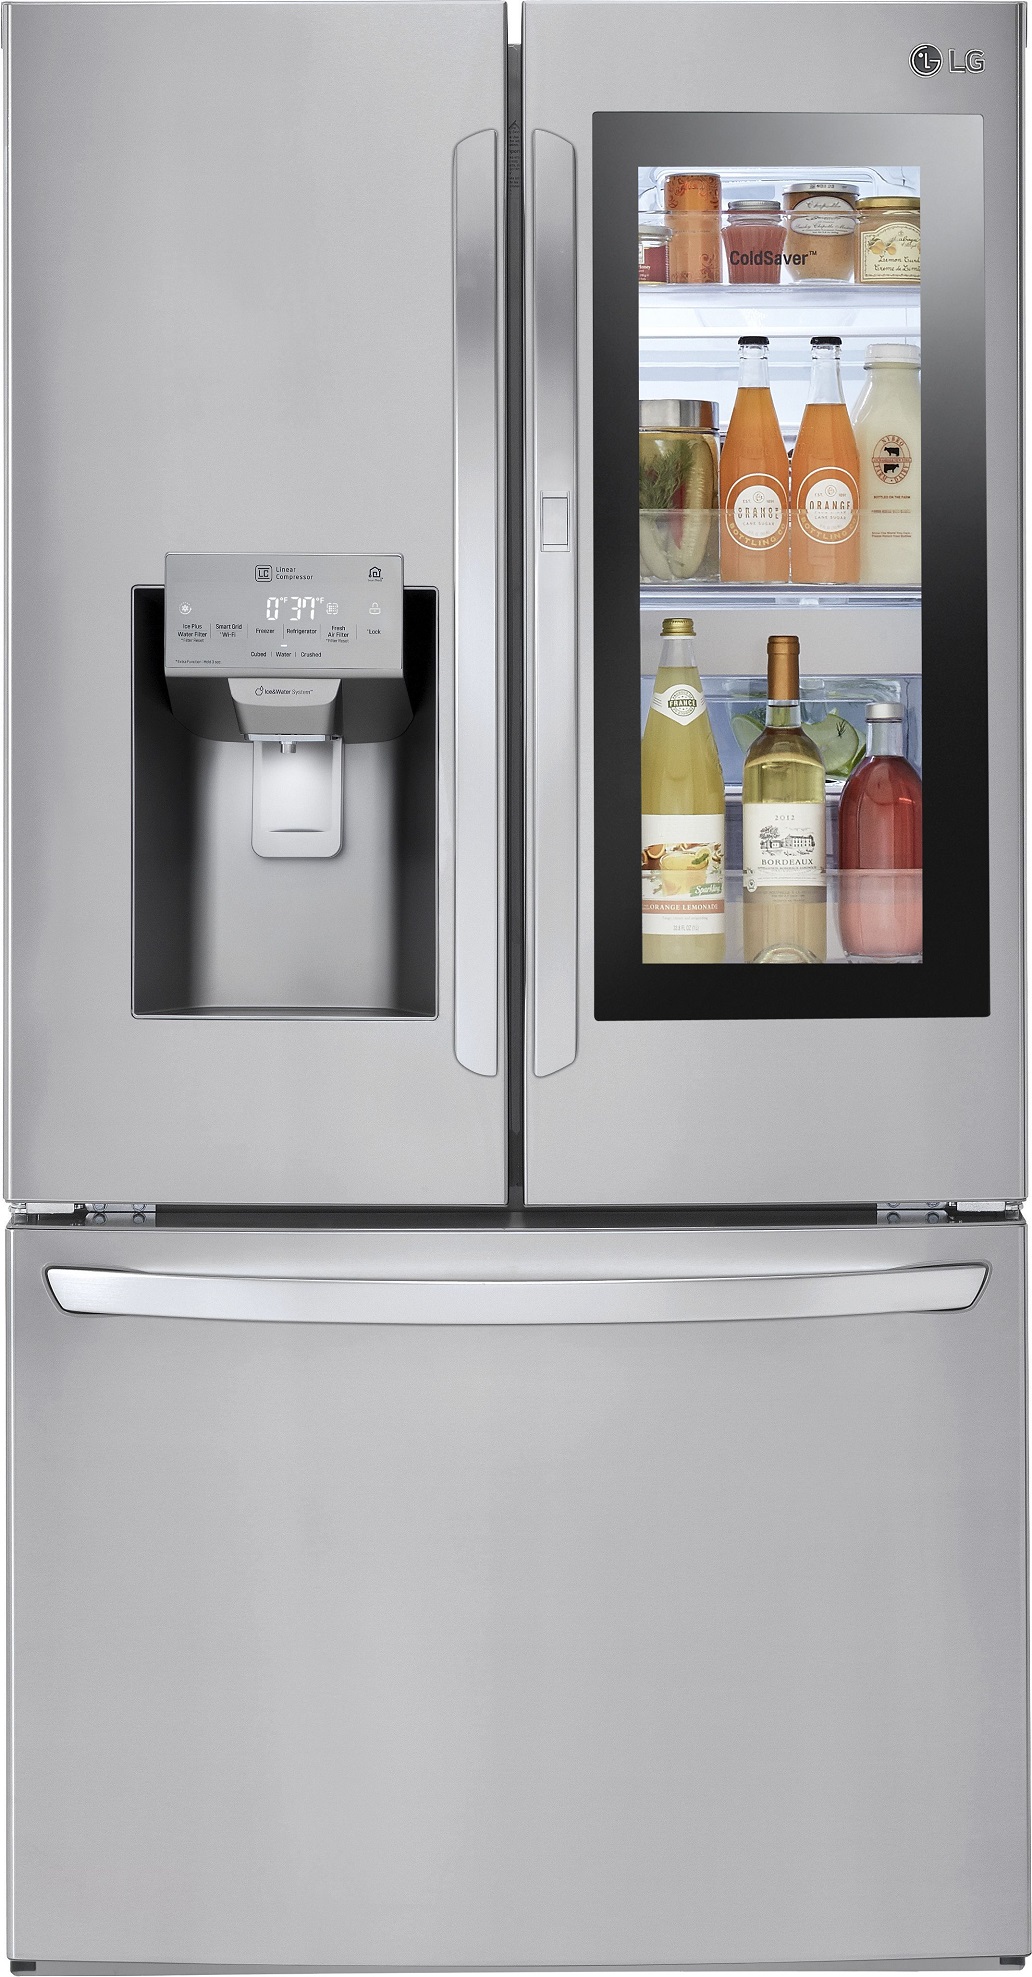 Lg LFXS28596S 28 Cu. Ft. French Door Refrigerator with DoorInDoor Technology Stainless Steel